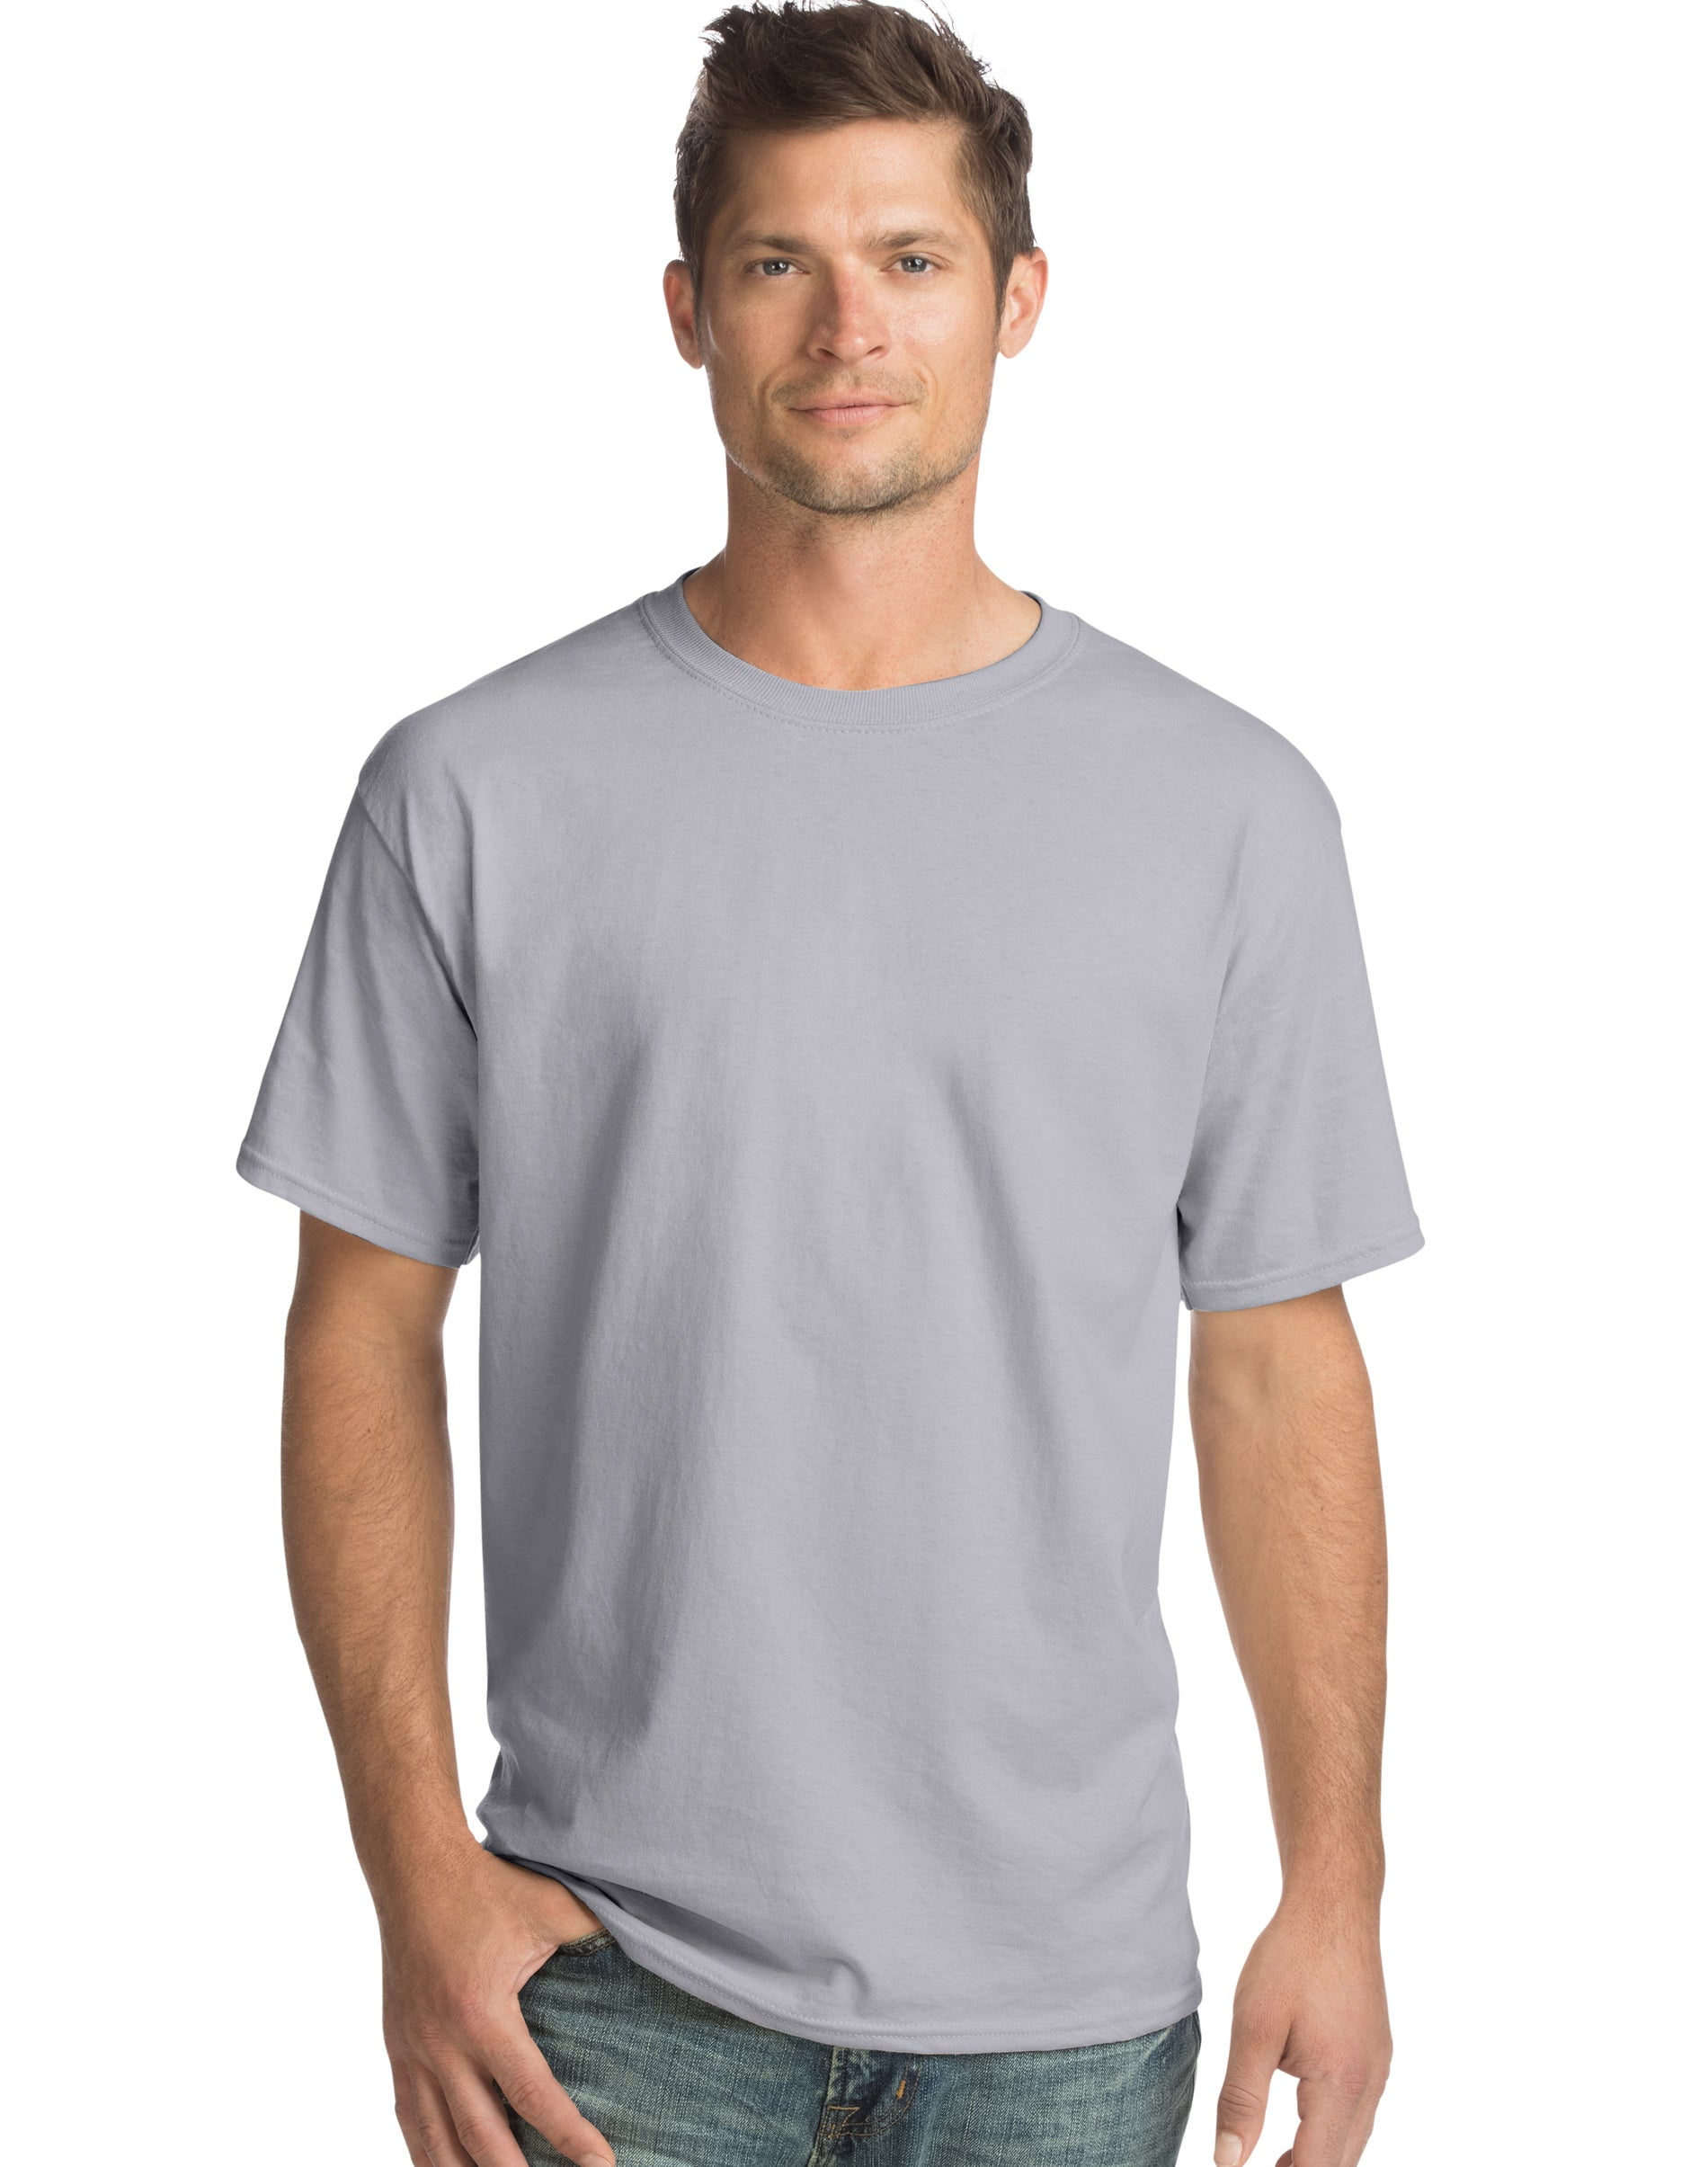 H4X' Men's Premium T-Shirt